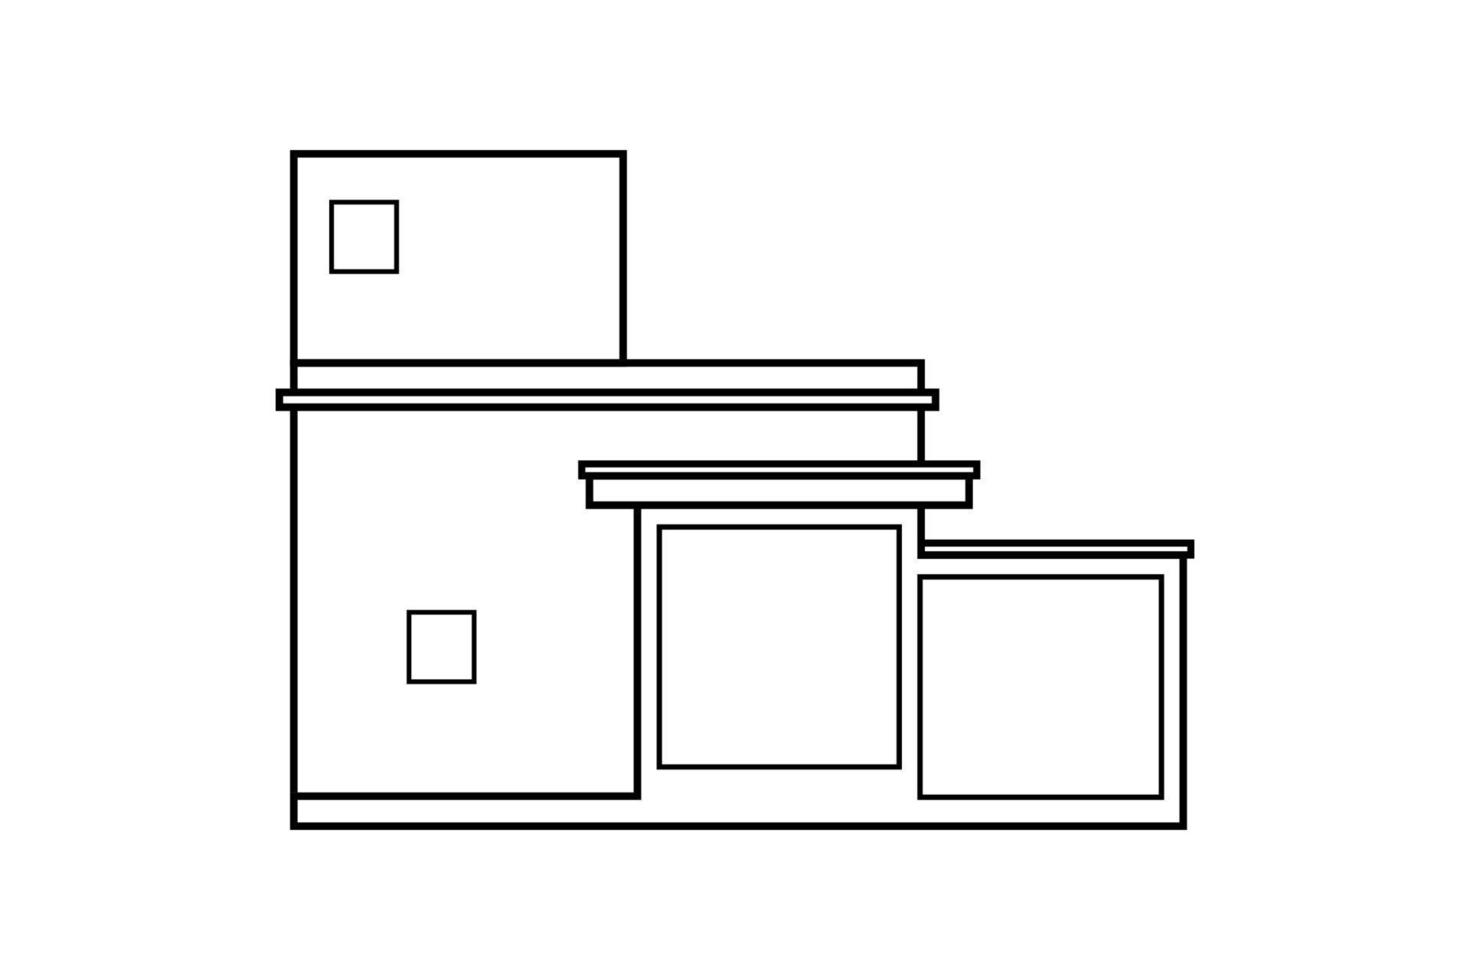 abstrakt konturritning, moderna hus eller bygga kvadratisk form vektorillustration vektor